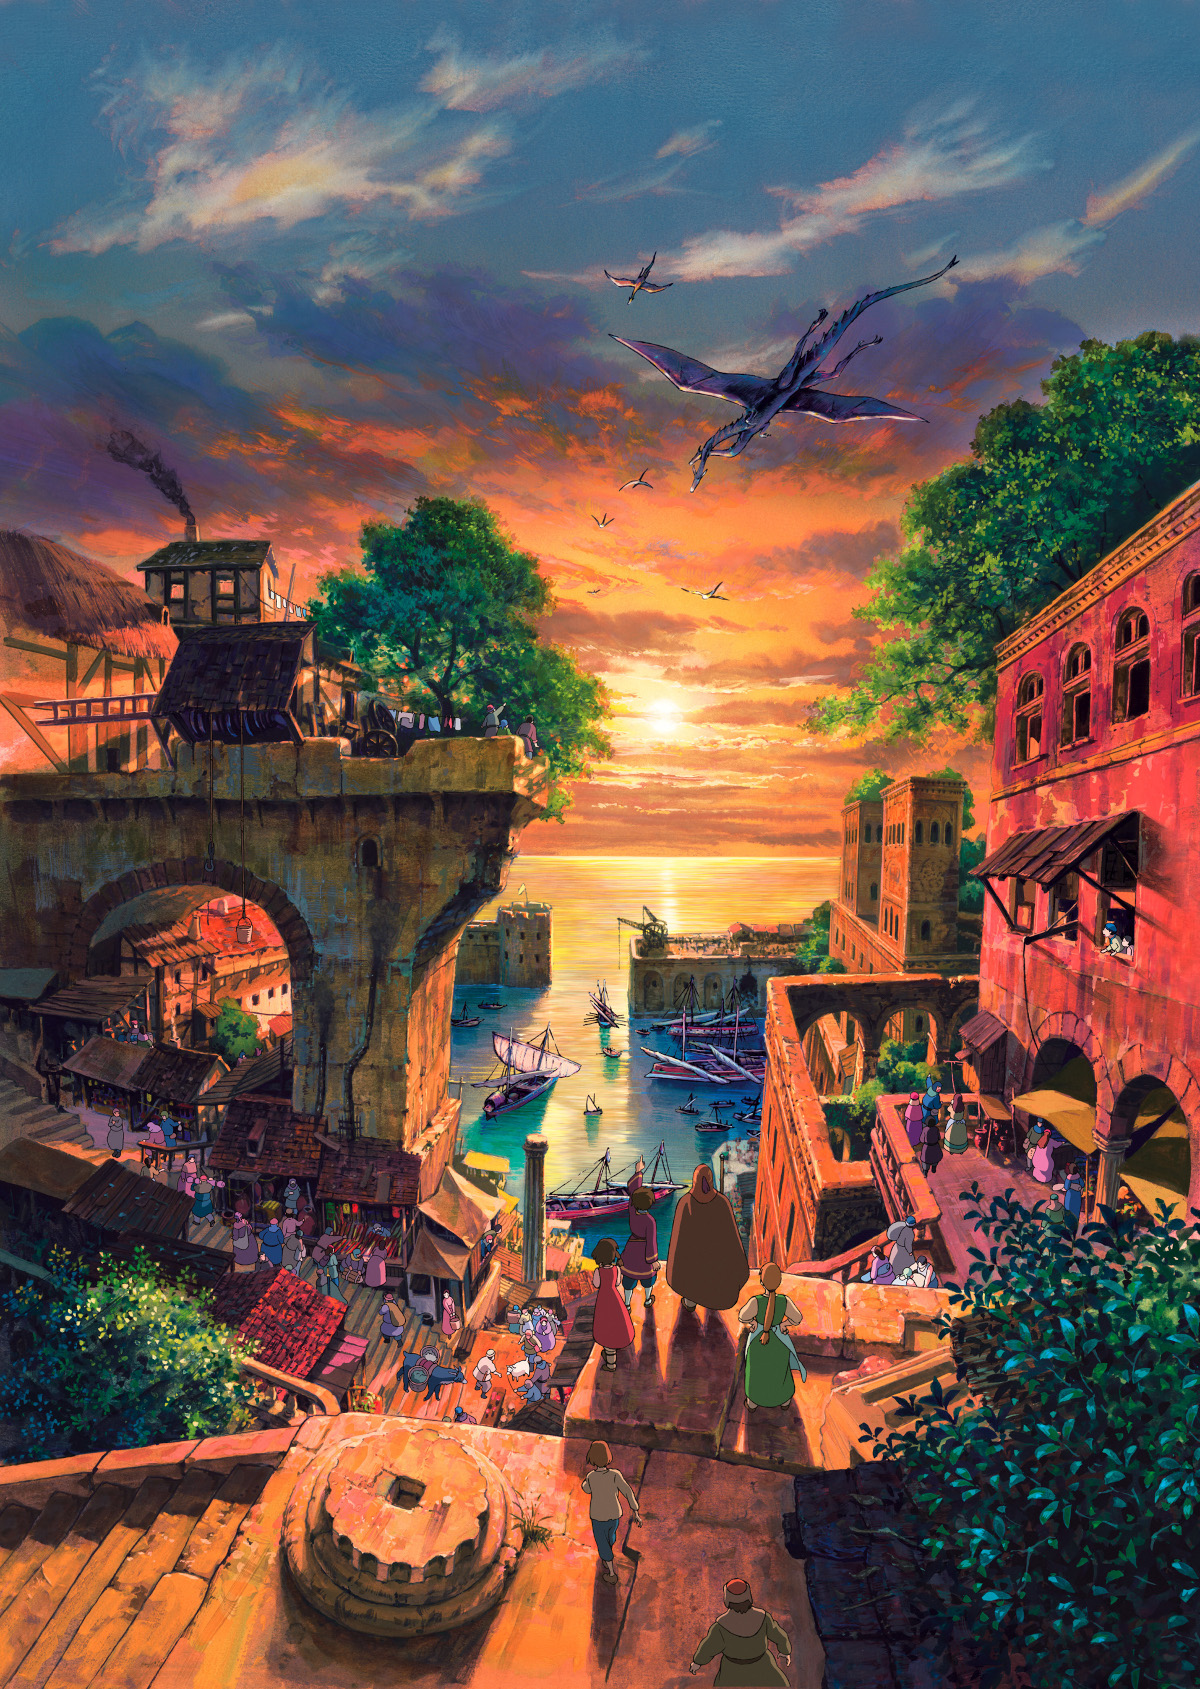 Kadr z filmu "Opowieści z Ziemiomorza" ("Tales from Earthsea"), reż. Gorō Miyazaki, 2006 4. Fot. Capital Pictures / Film Stills / Forum 